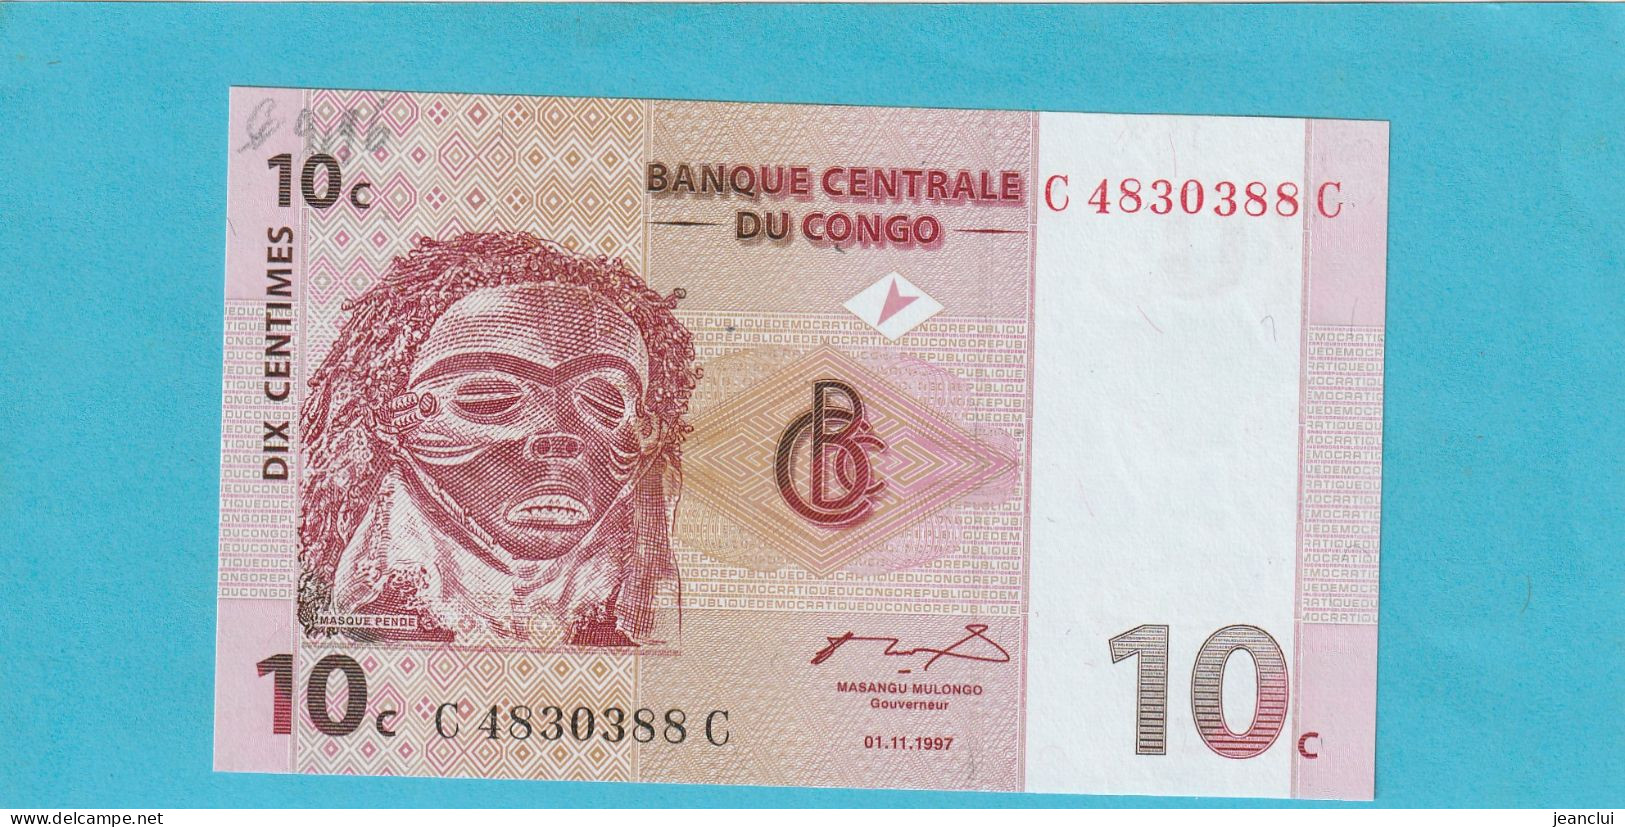 BANQUE CENTRALE DU CONGO  .  10 CENTIMES  .  01-11-1997  .  N°  C 4830388 C   .  BILLET EN TRES BEL ETAT  .  2 SCANNES - Democratische Republiek Congo & Zaire